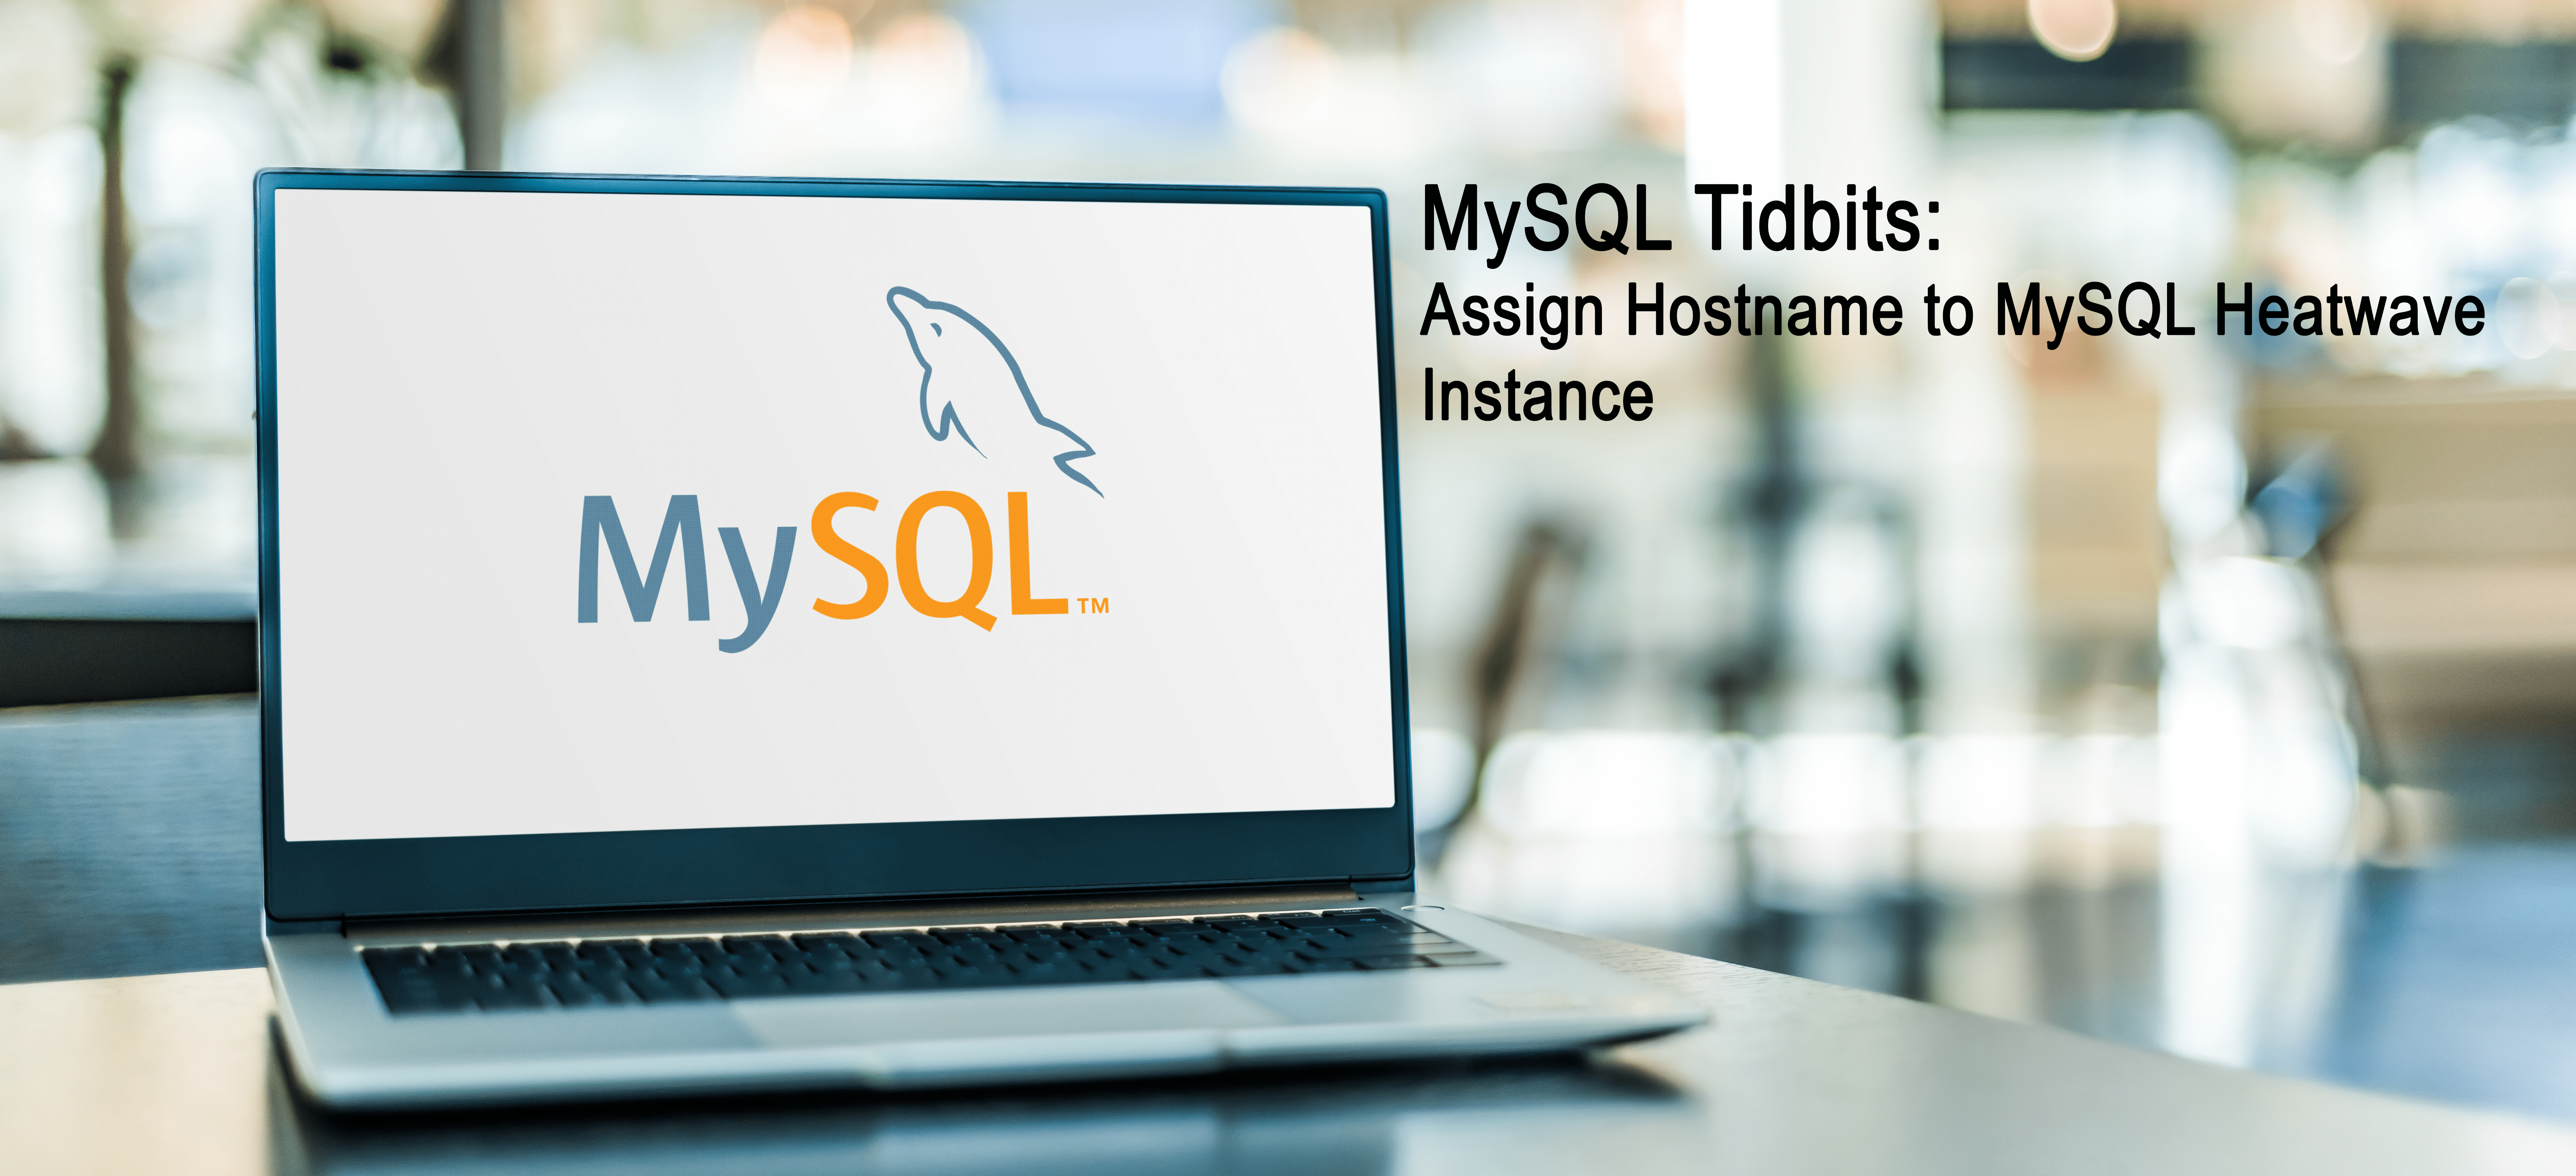 Mysql tidbits Assign Hostname MySQLHeatwave dbasolved